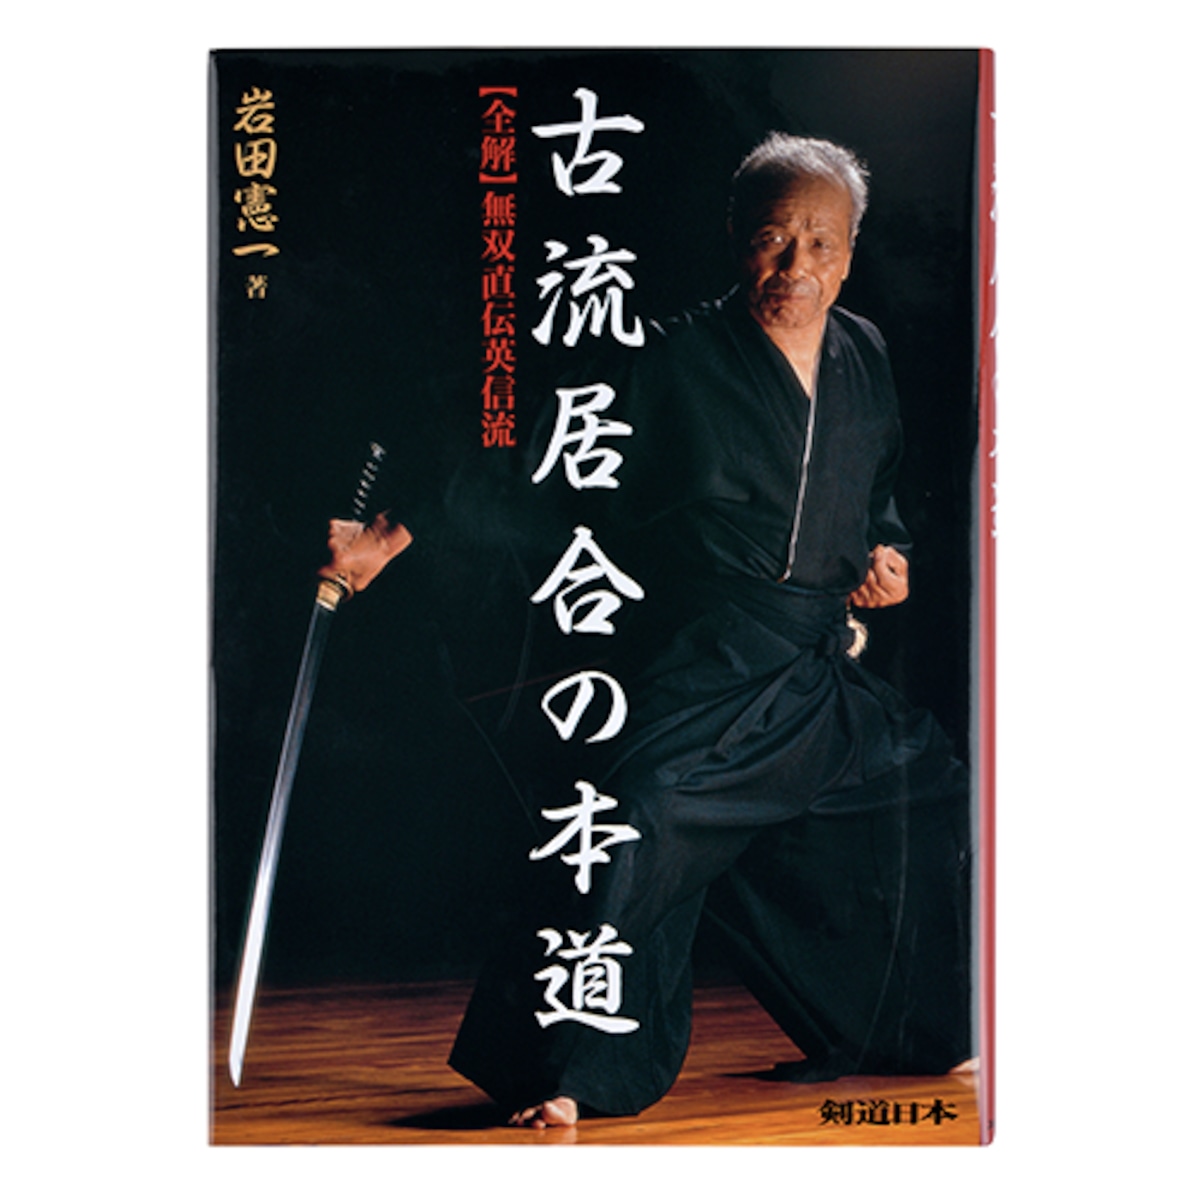 古流居合の本道－全解・無双直伝英信流－ | 剣道日本オフィシャル通販